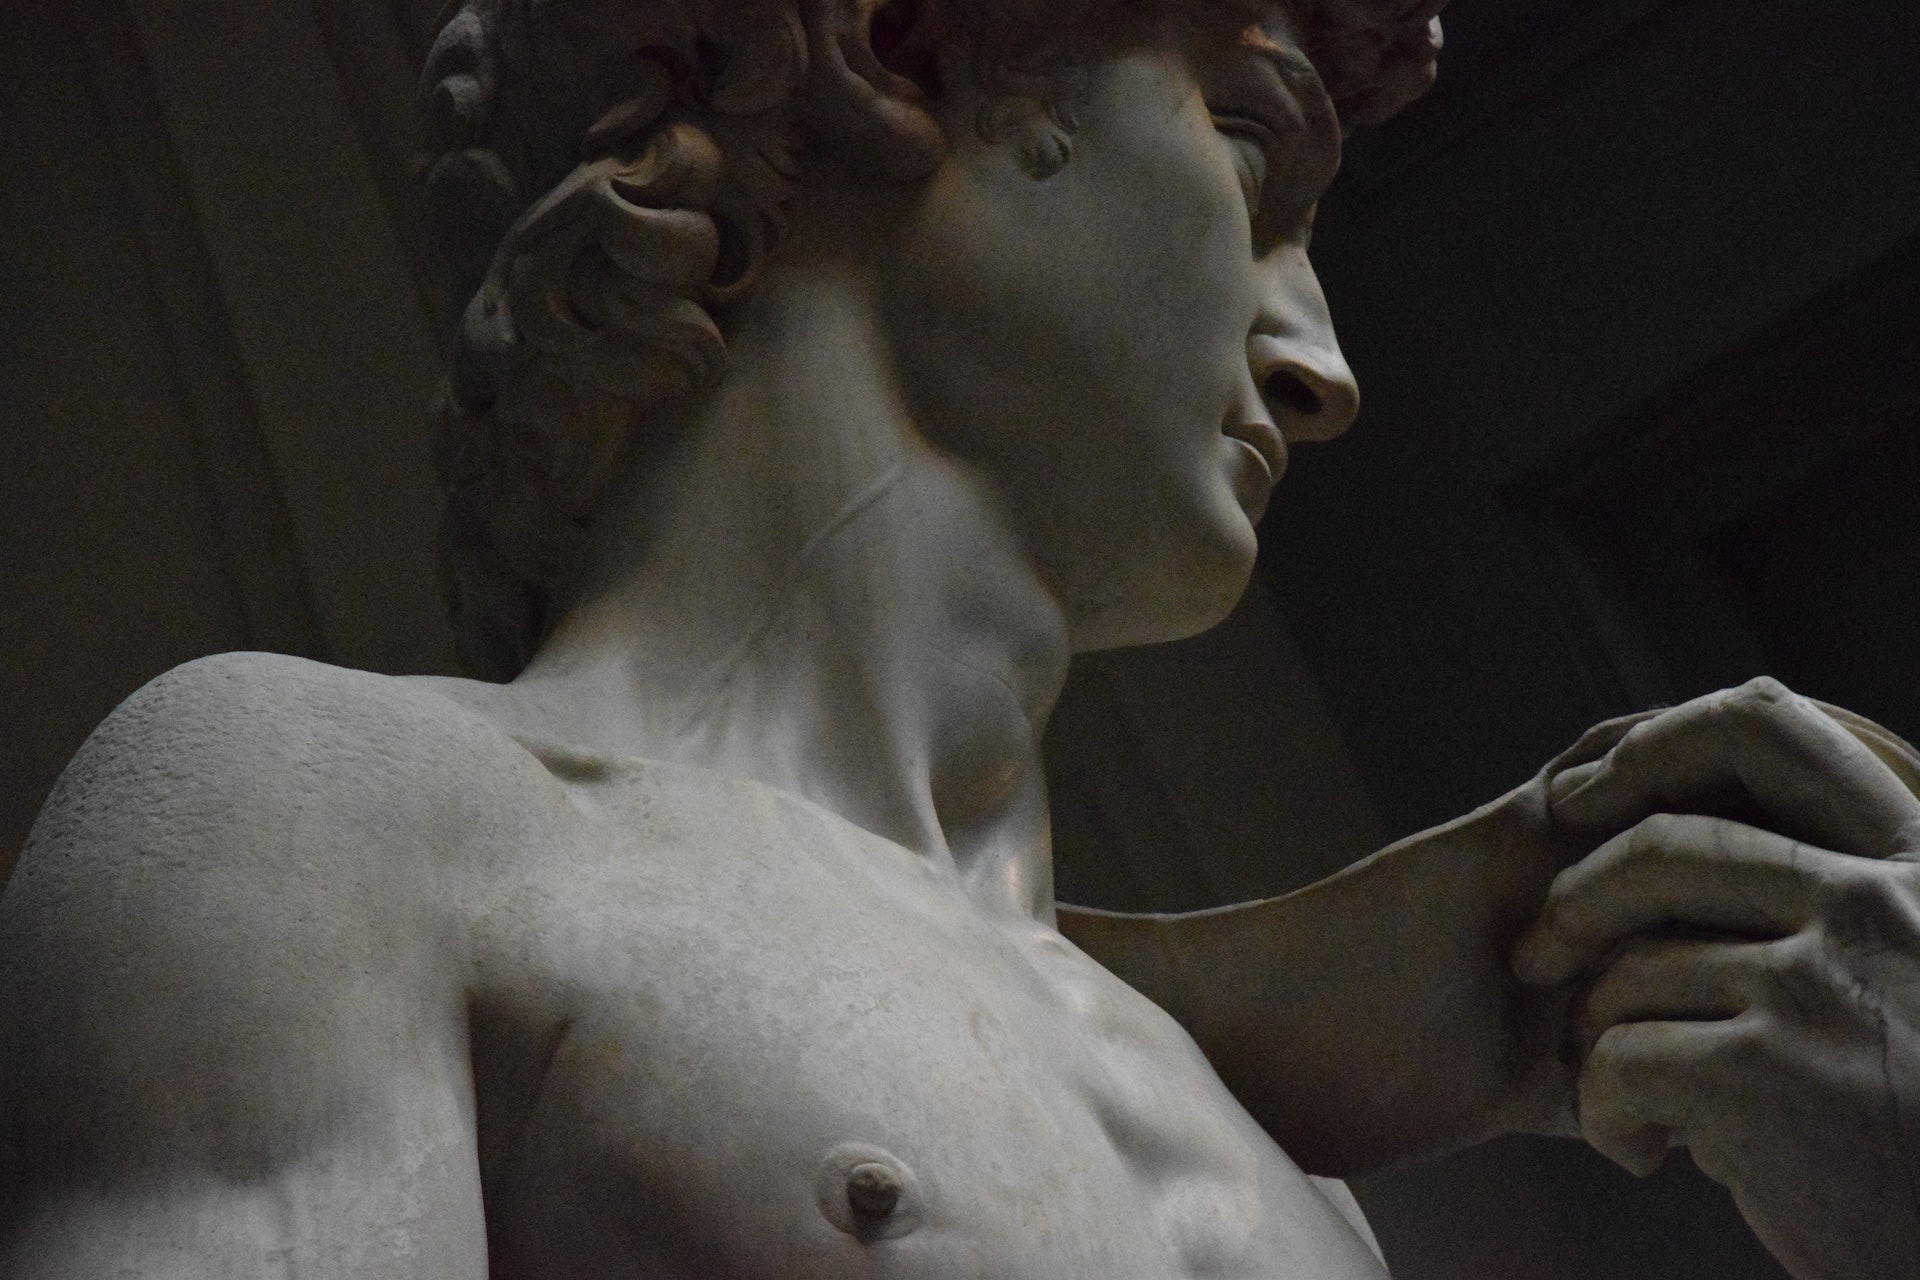 Dettaglio del David di Michelangelo